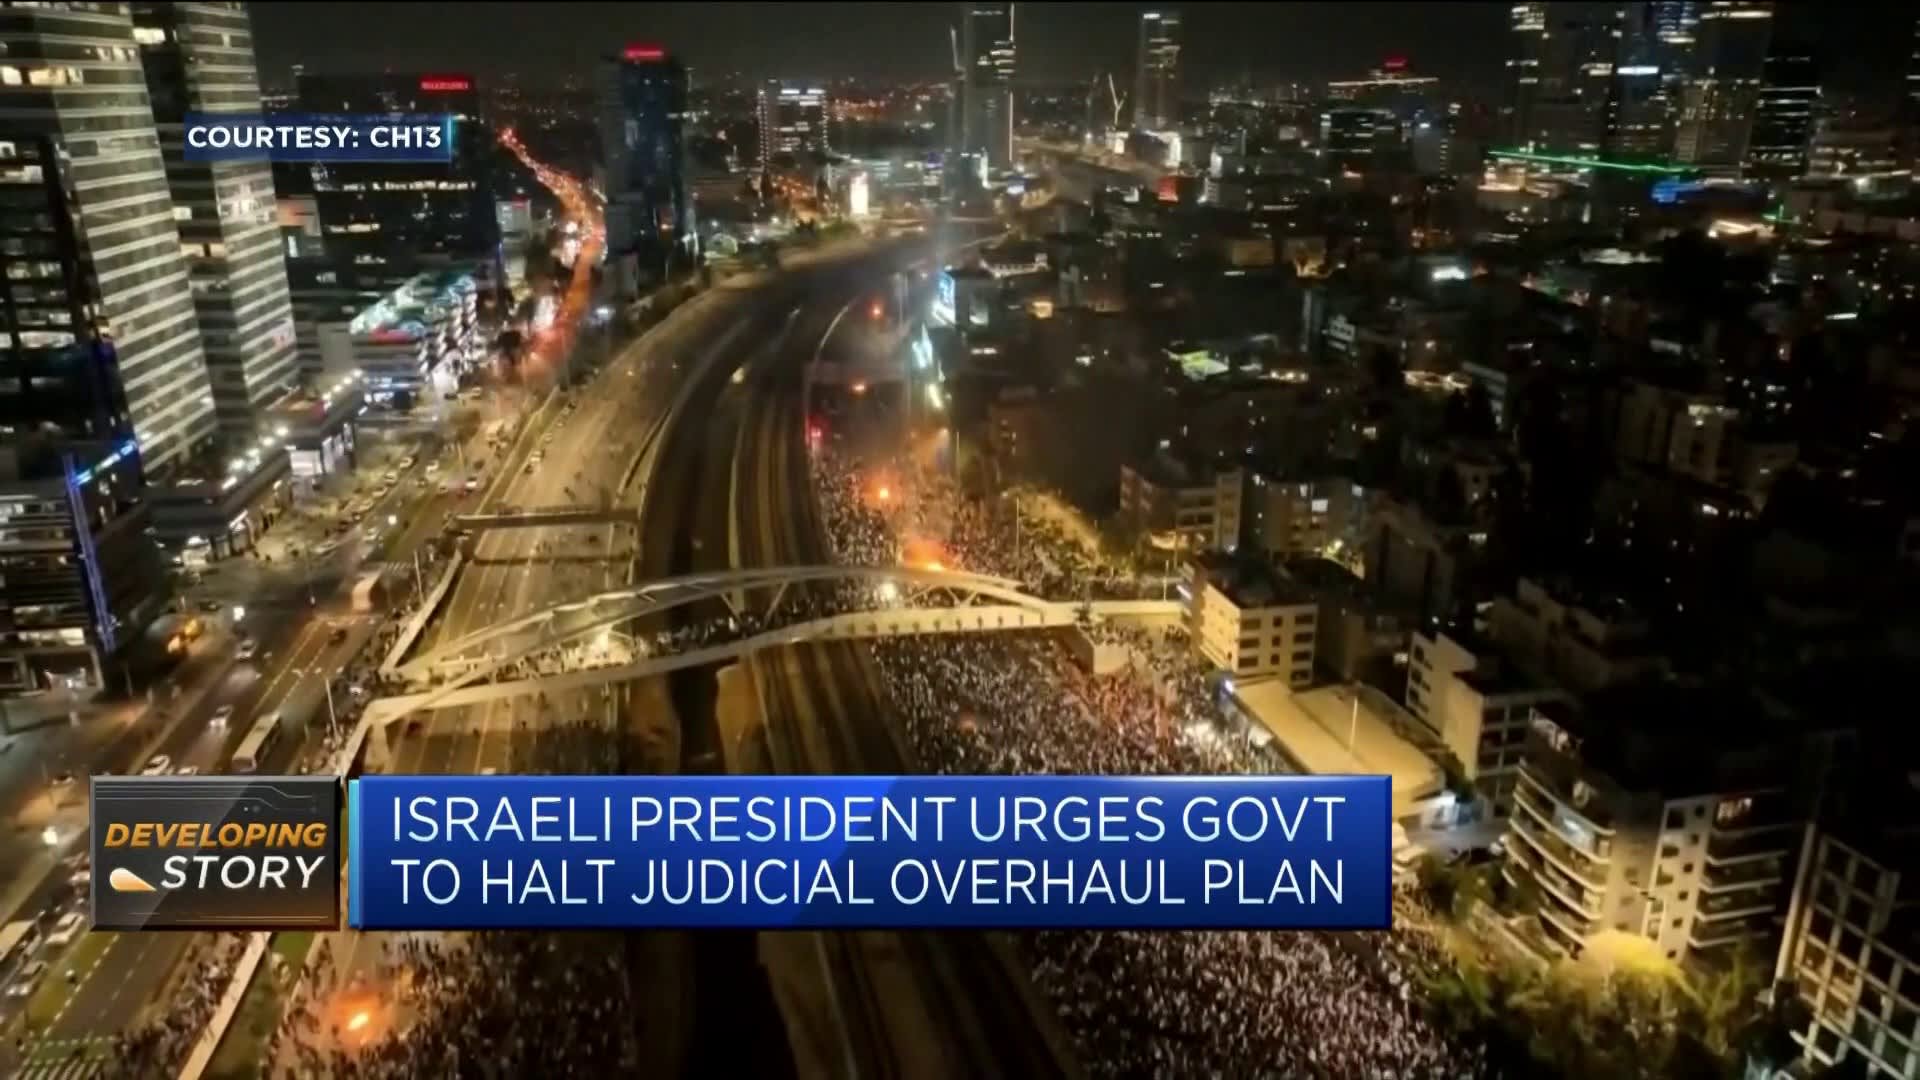 Mass protests erupt after Israeli Prime Minister Netanyahu fires defense minister